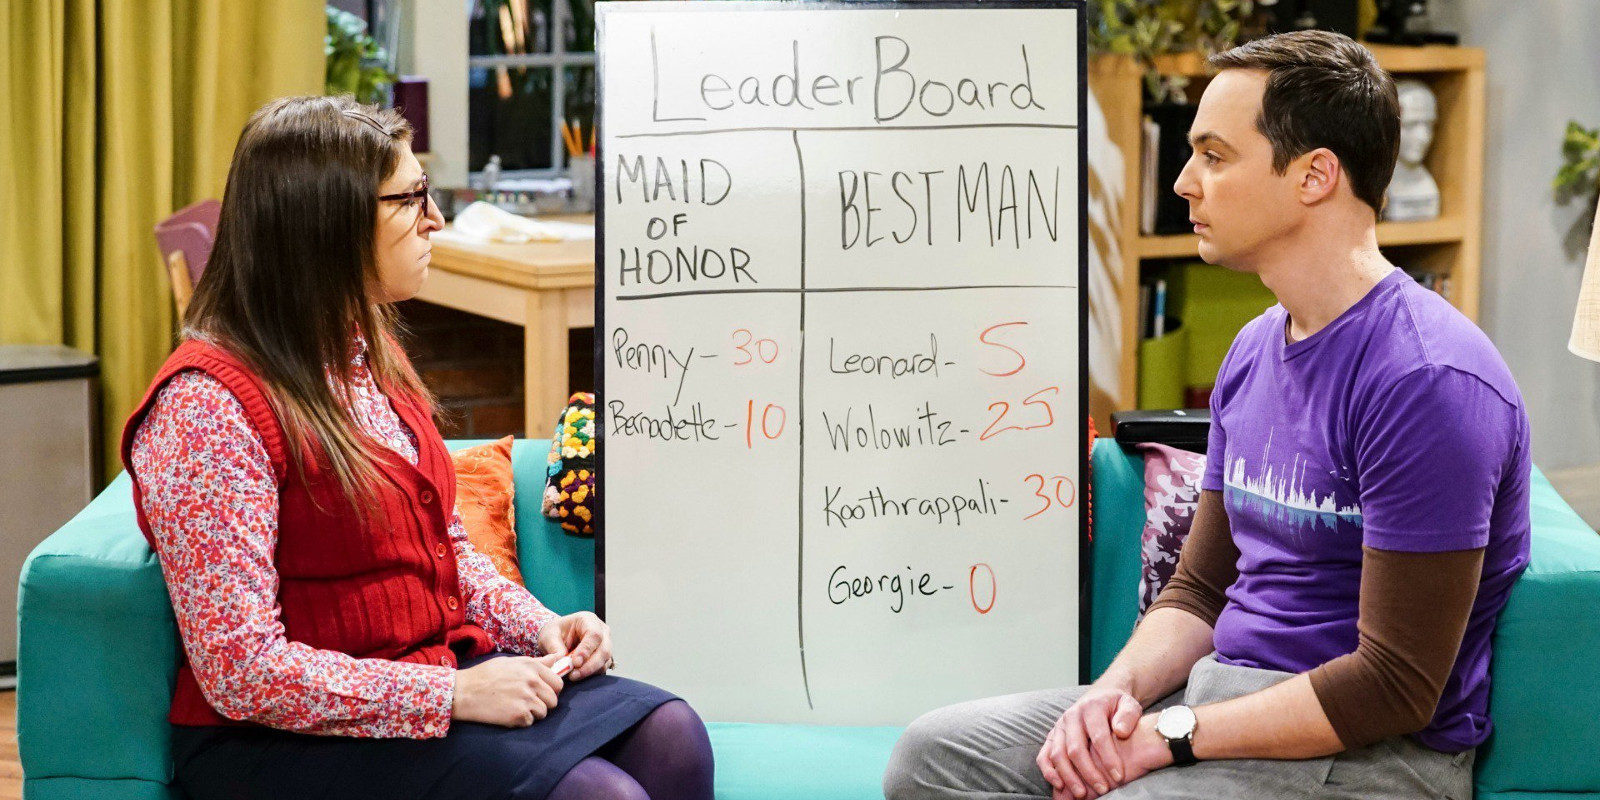 Crítica 'The Big Bang Theory' 11x12: La madrina y el caballero de honor en un capítulo muy gracioso